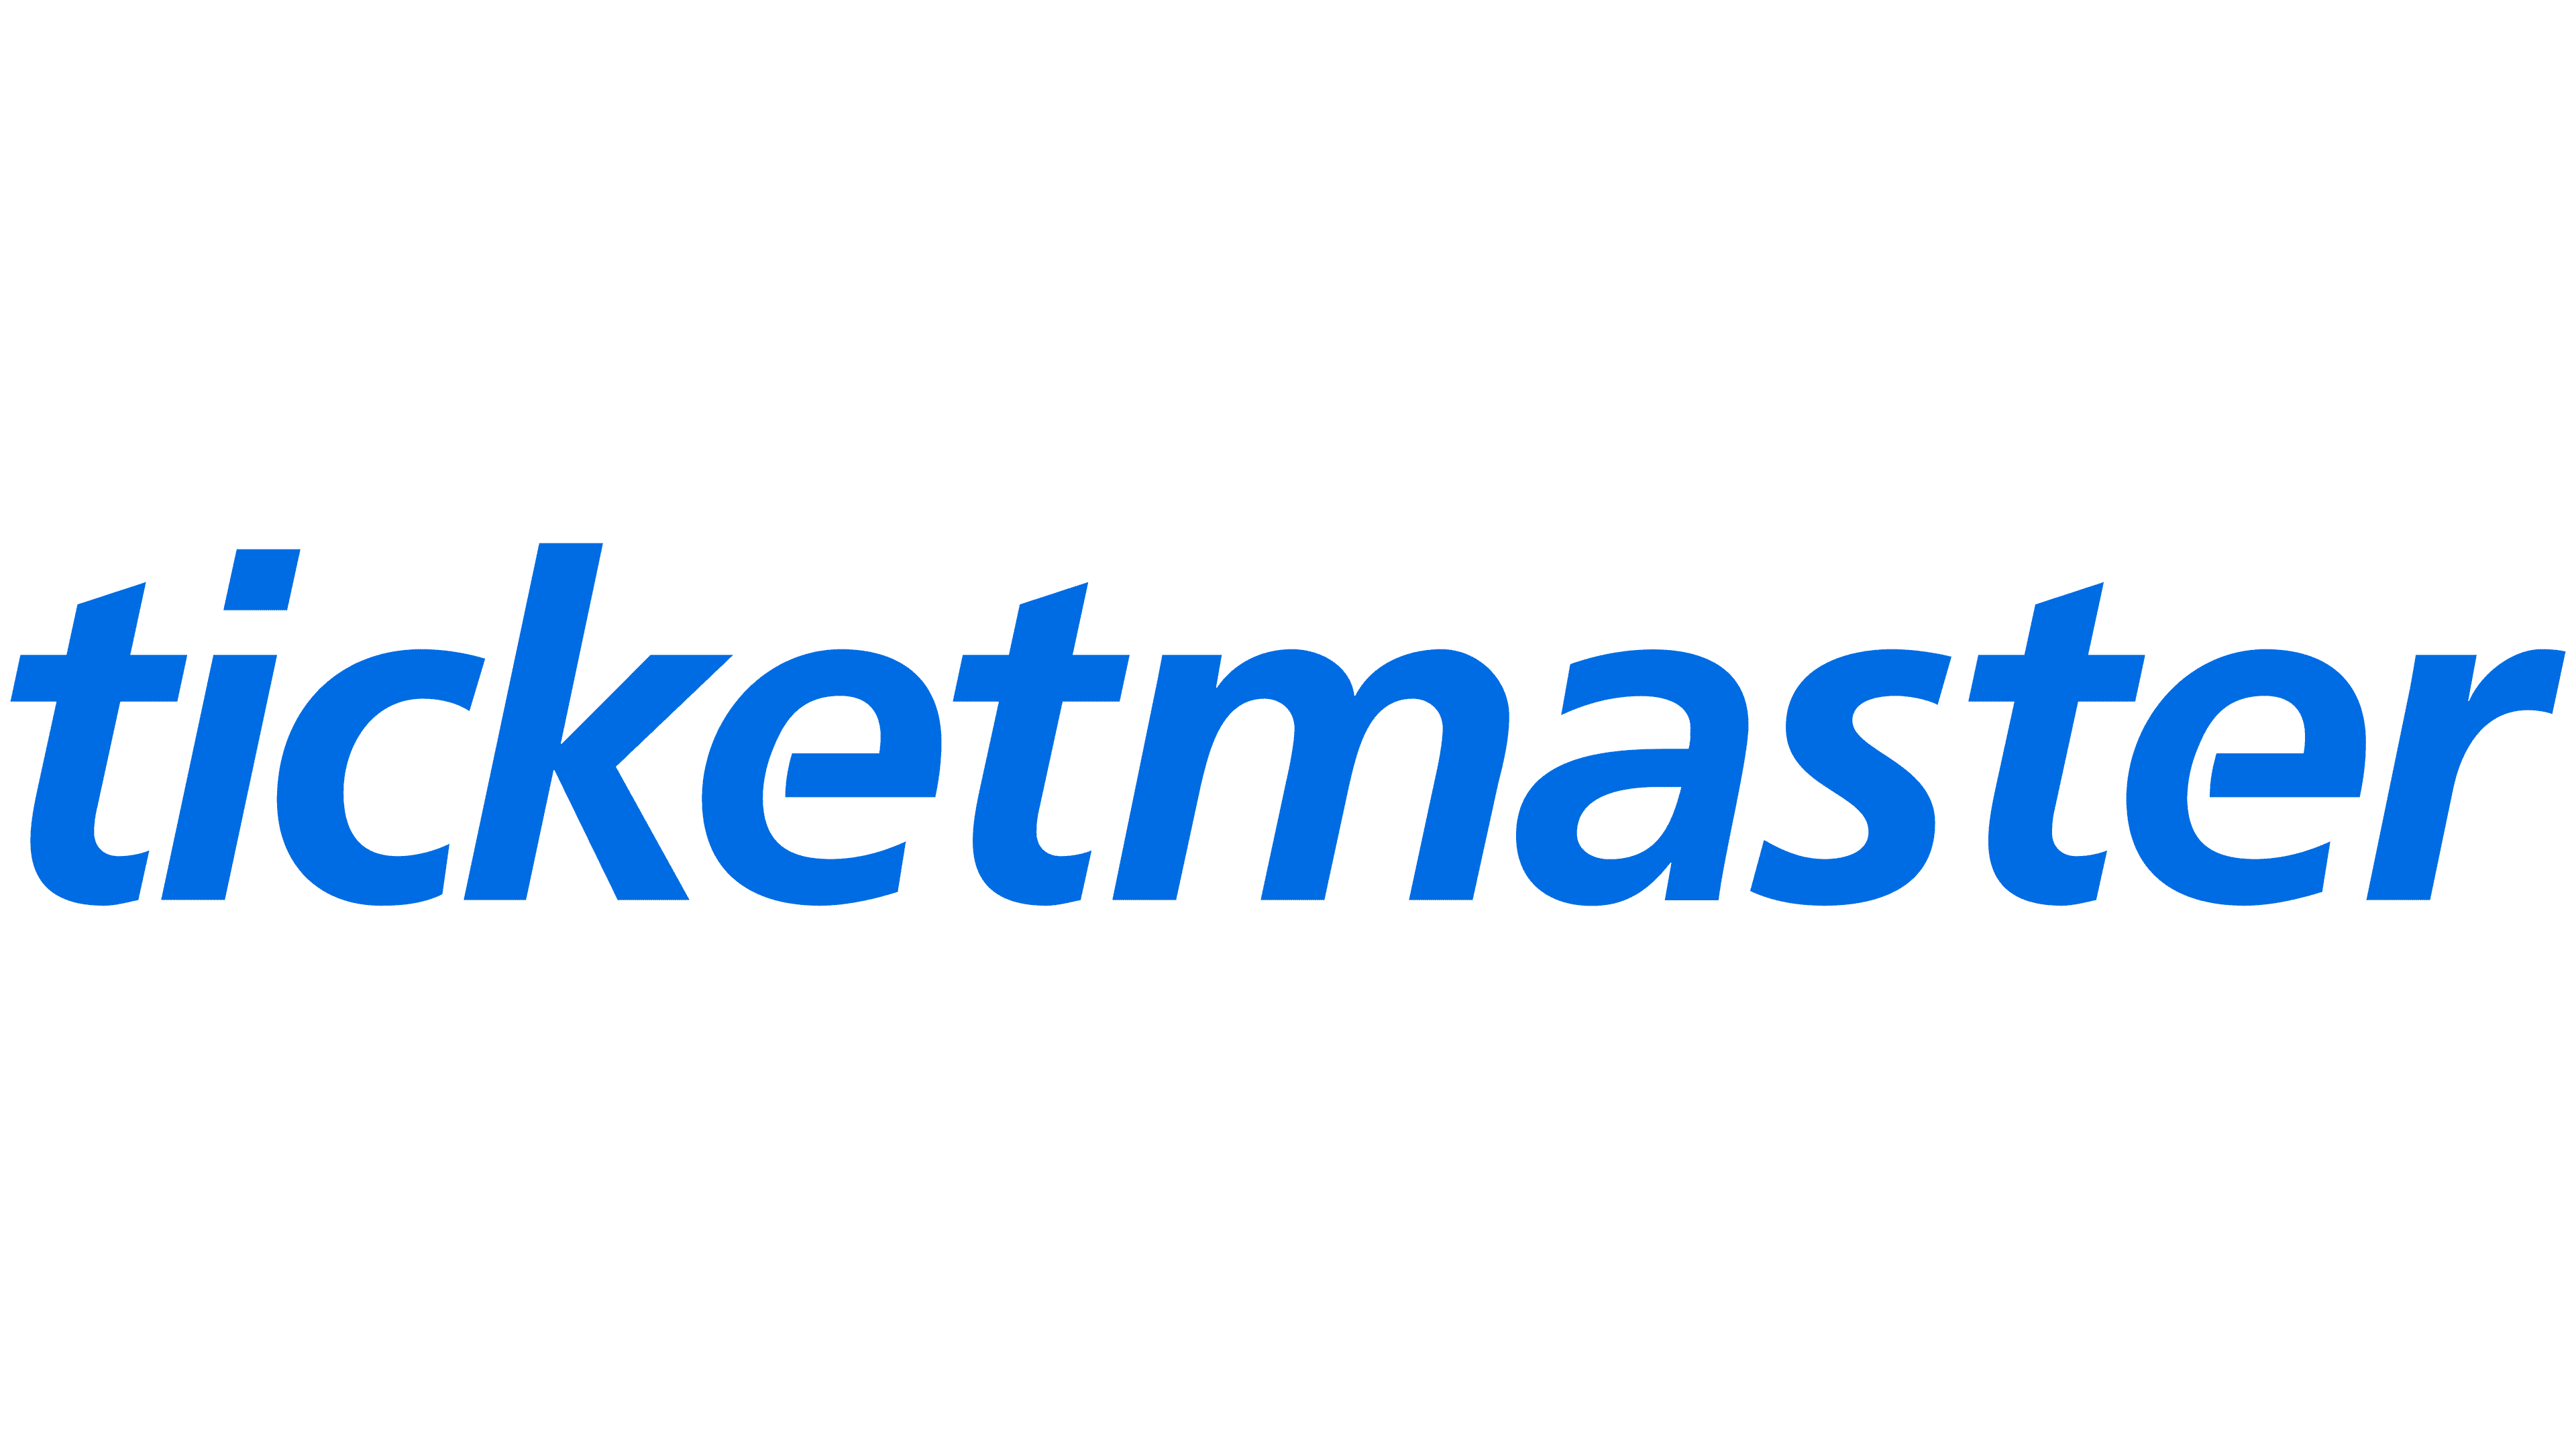 Ticketmaster-Logo